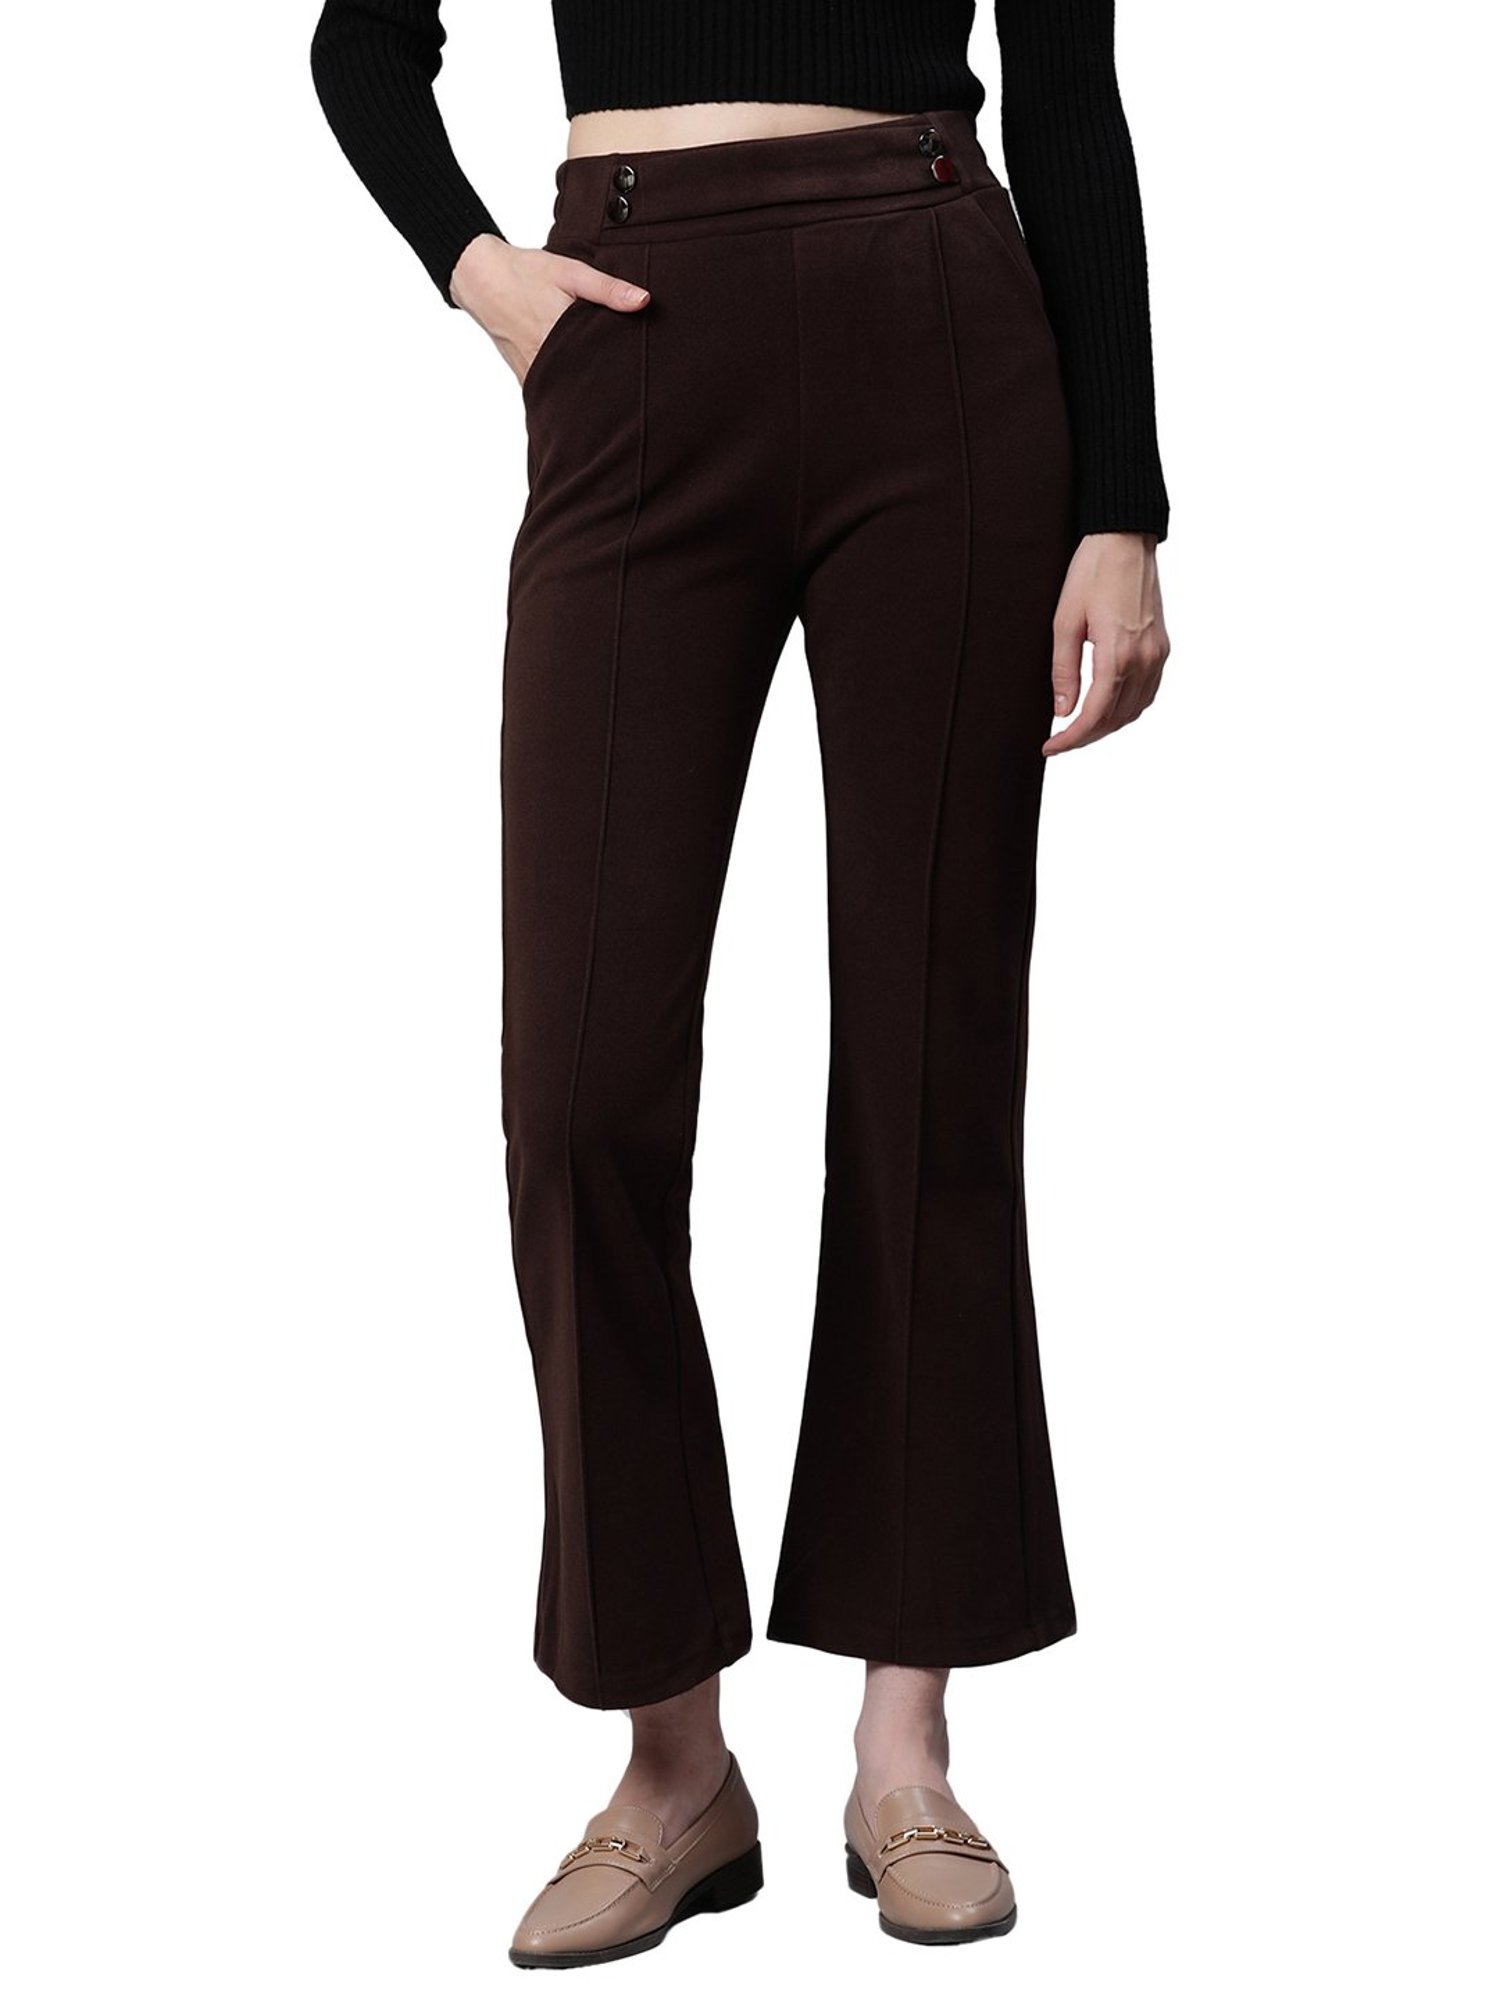 Buy Beige Trousers  Pants for Women by GLOBAL REPUBLIC Online  Ajiocom